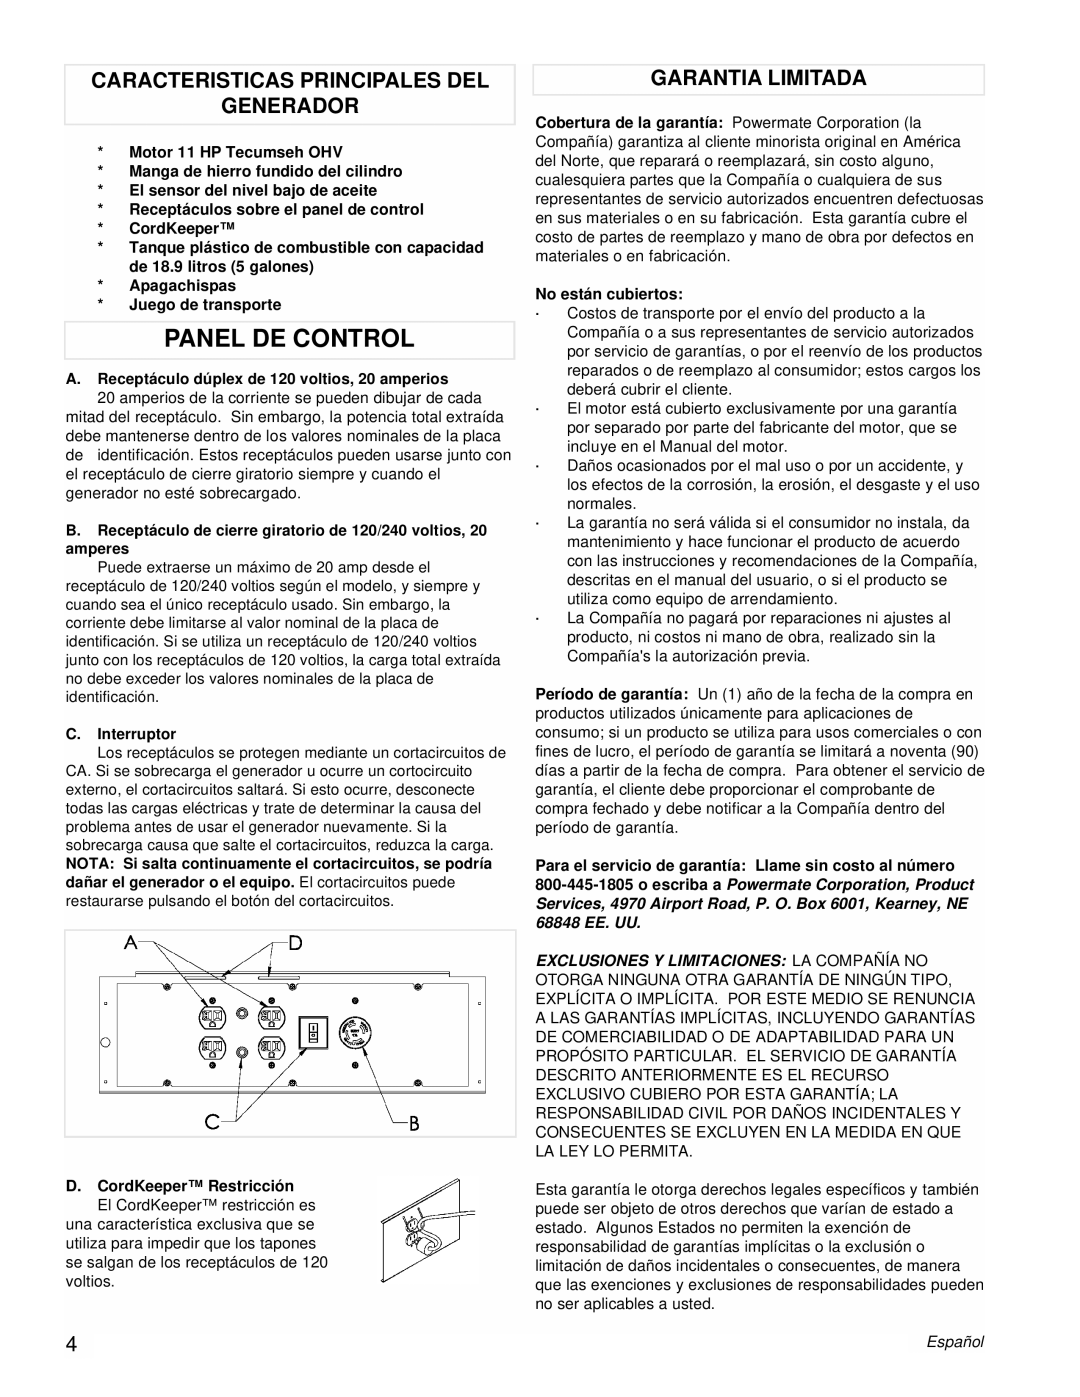 Powermate PMC525300 manual Panel De Control, Caracteristicas Principales Del Generador, Garantia Limitada 